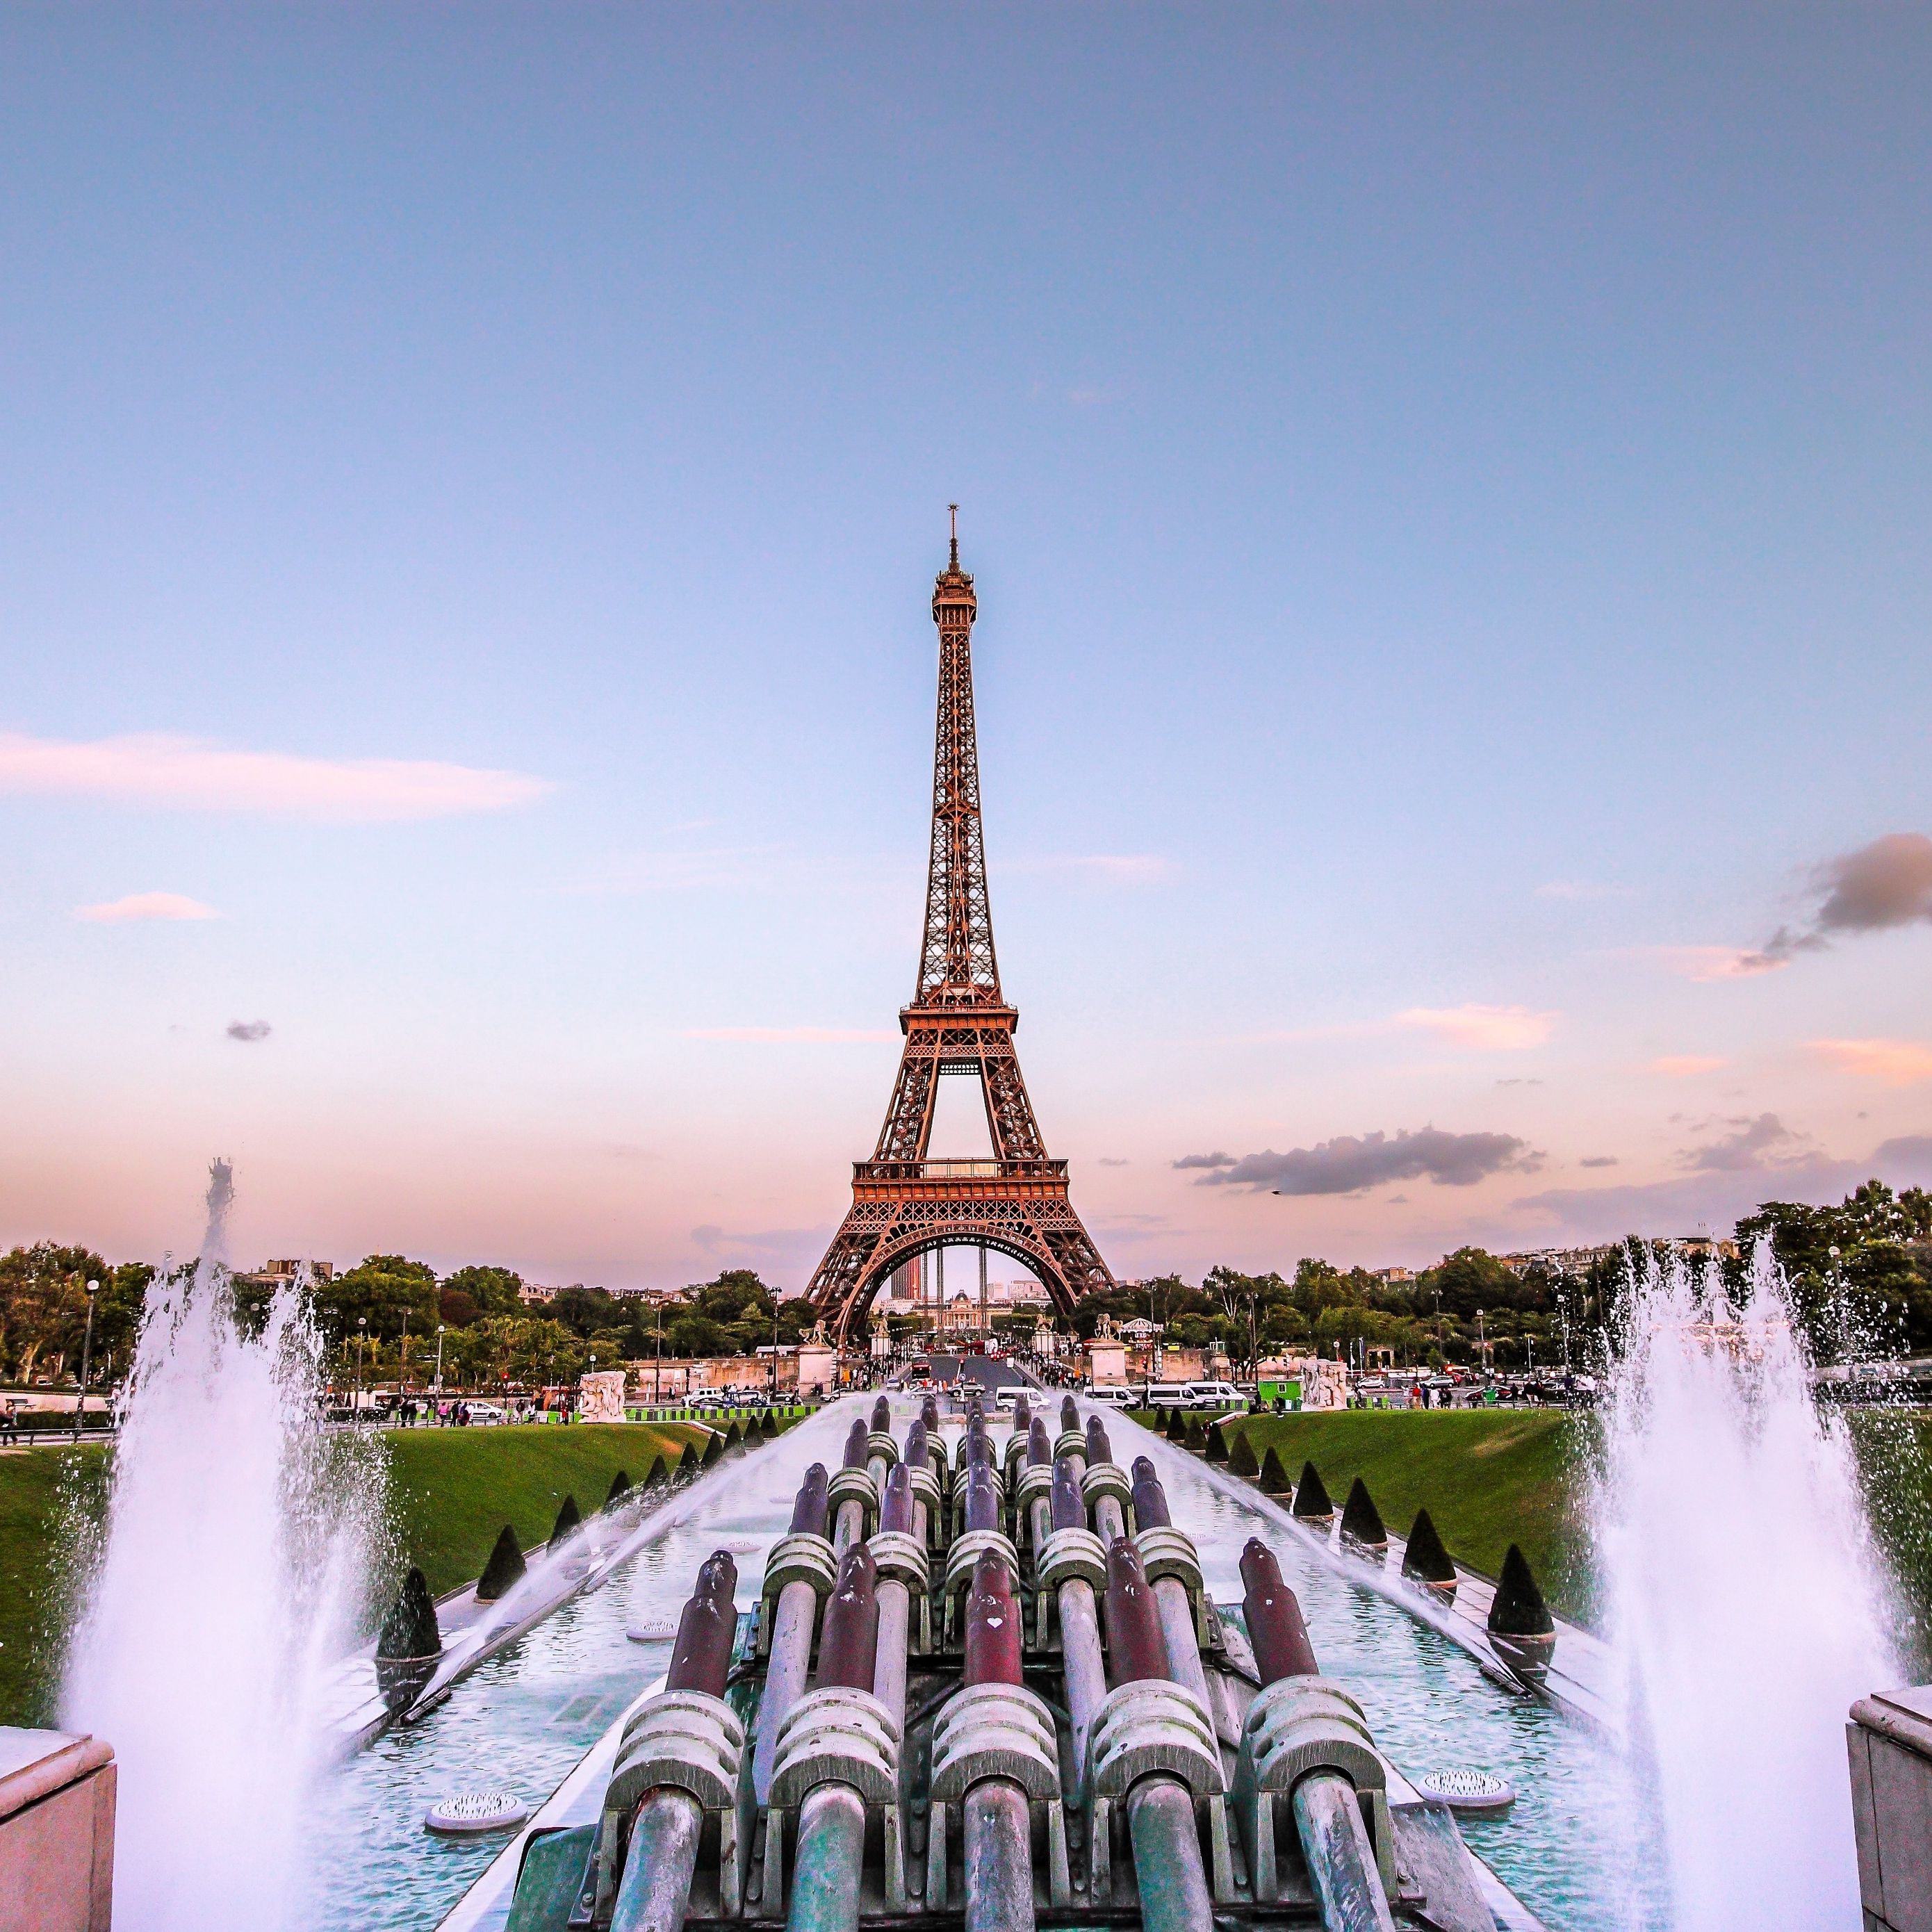 Tải xuống hình nền 2780x2780 Eiffel Tower, Paris, hoàng hôn vàng ngọc để thỏa sức tạo điểm nhấn cho màn hình của bạn. Hình ảnh đầy lấp lánh này sẽ khiến bạn chìm đắm trong thế giới mơ mộng của thành phố ánh sáng.